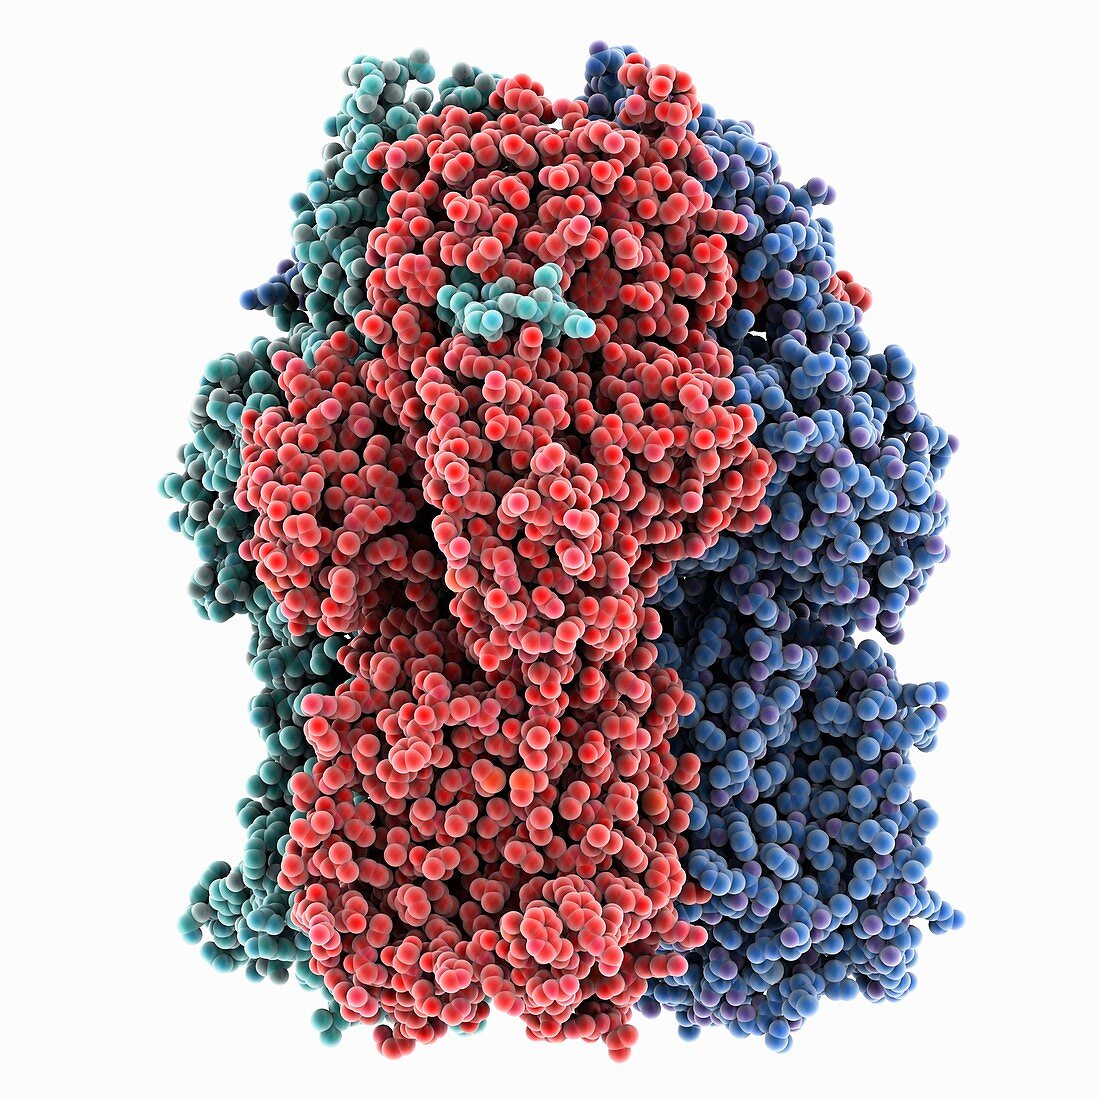 Multidrug efflux transporter AcrB, molecular model